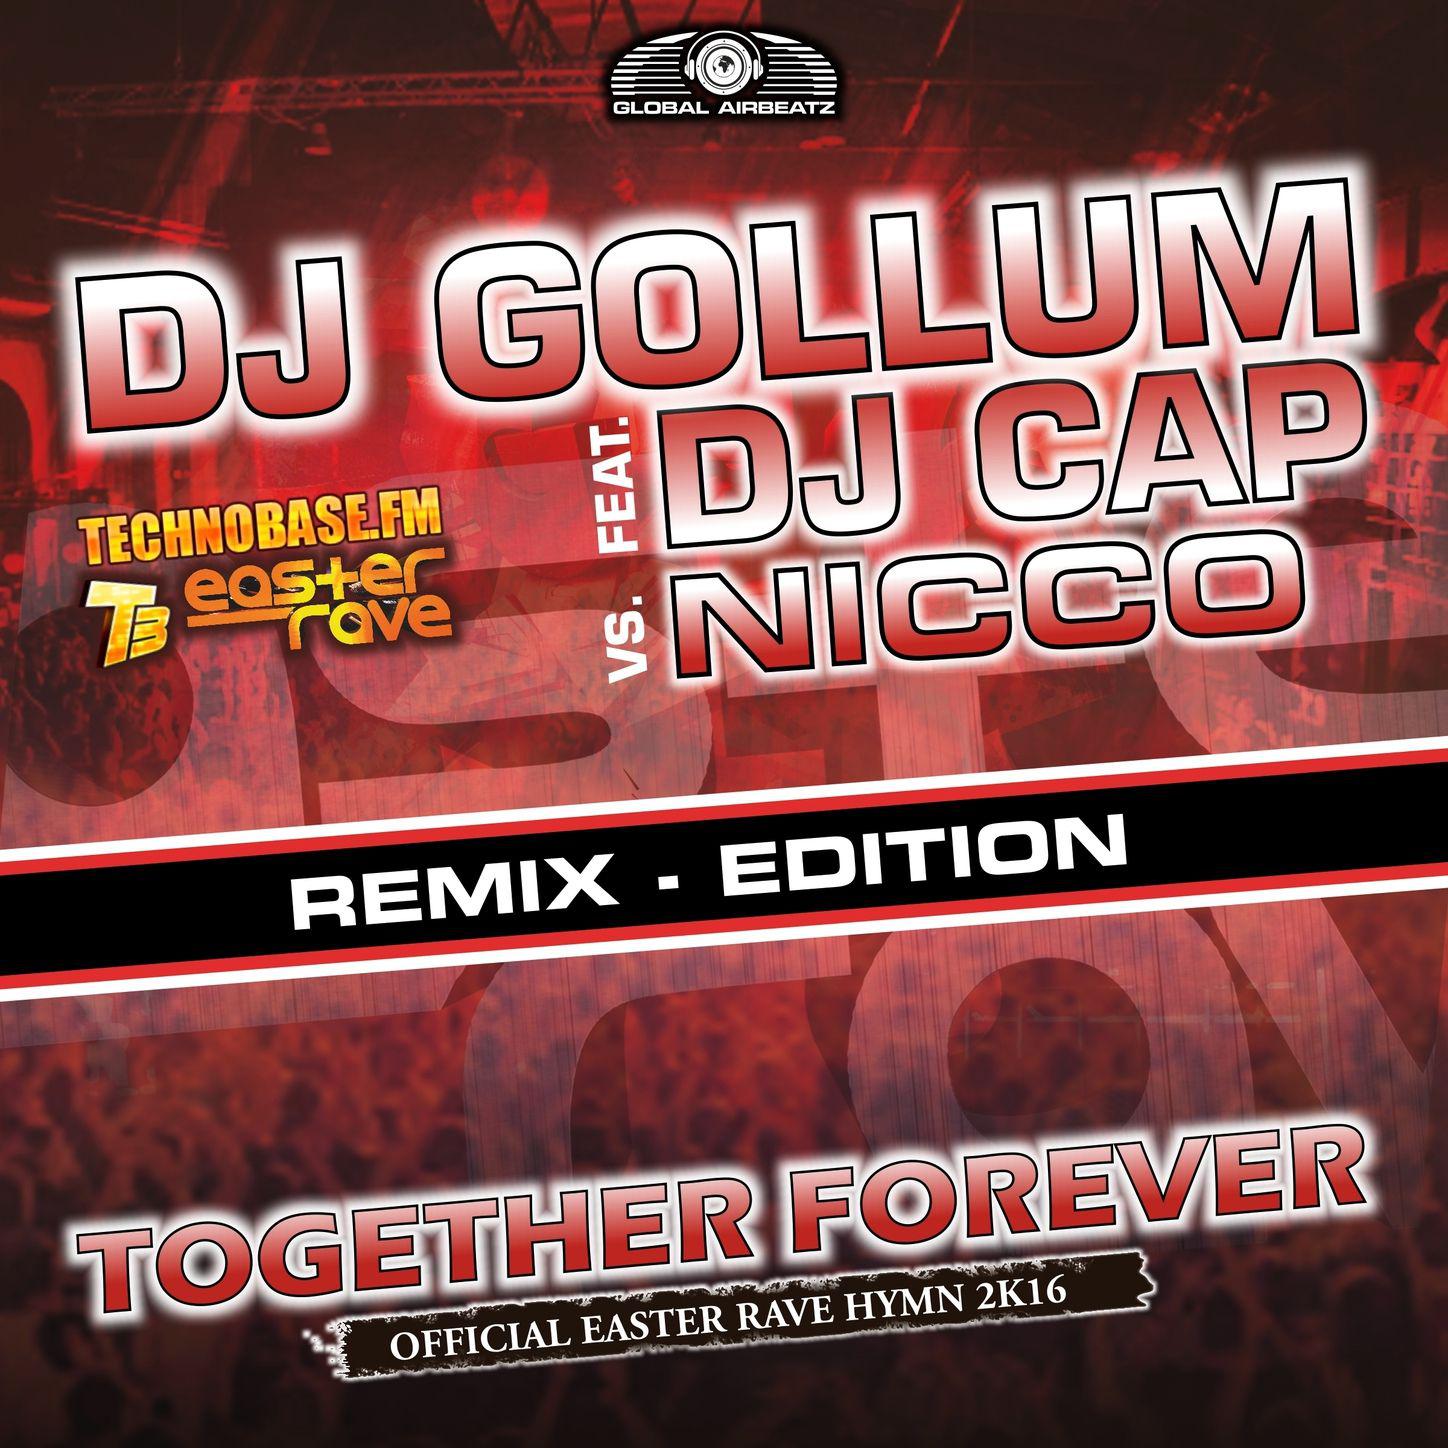 Together Forever (Easter Rave Hymn 2k16) (feat. DJ Cap vs. NICCO) [P!Crash Radio Edit]